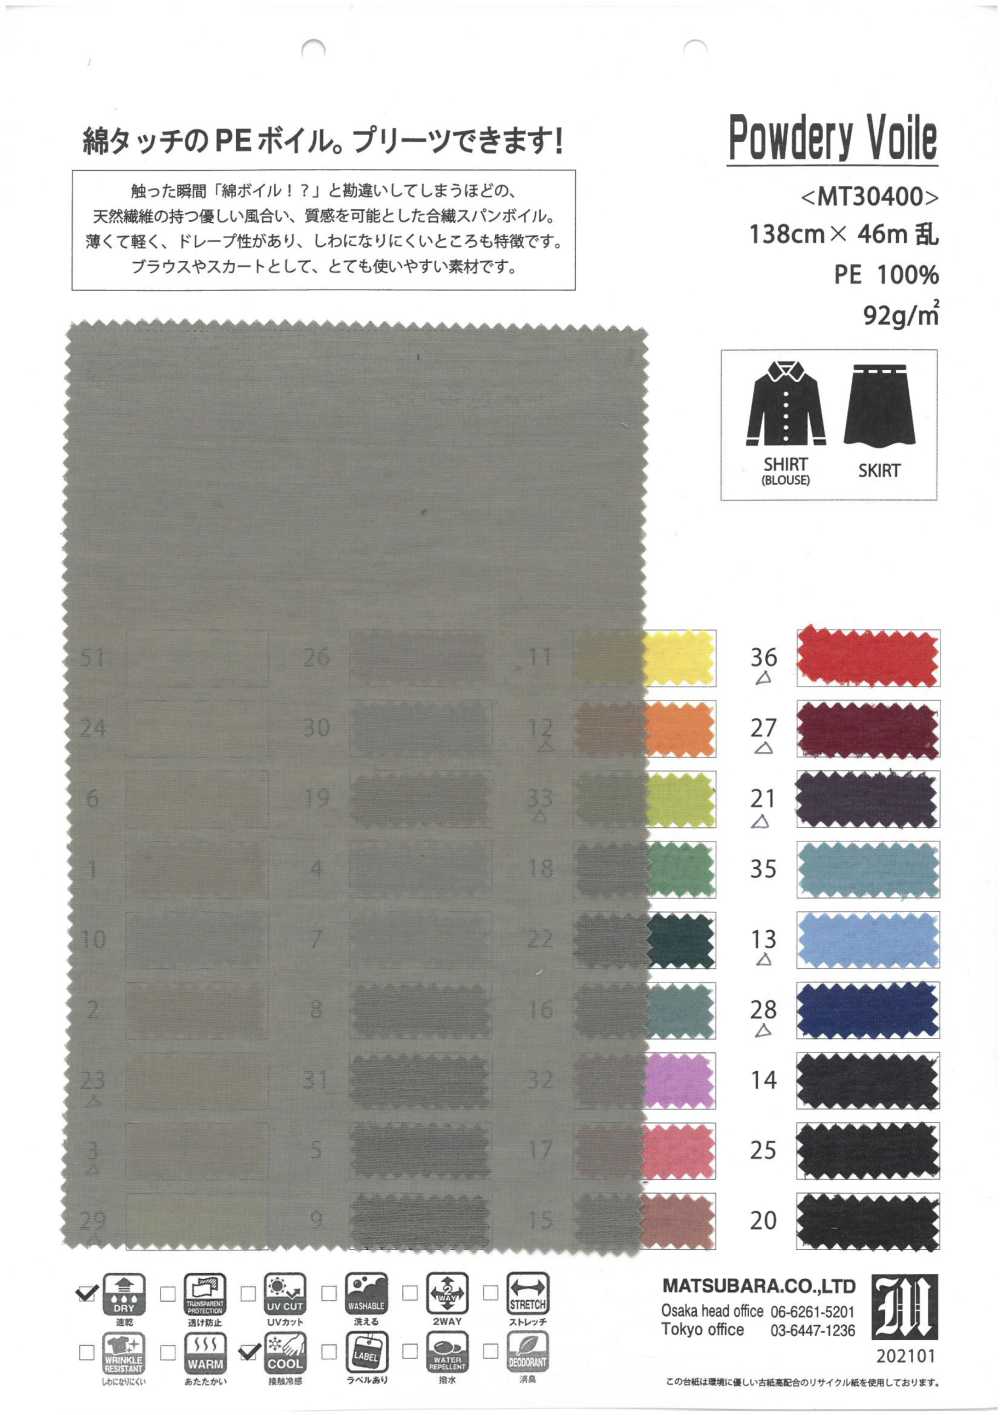 MT30400 Voile Em Pó[Têxtil / Tecido] Matsubara